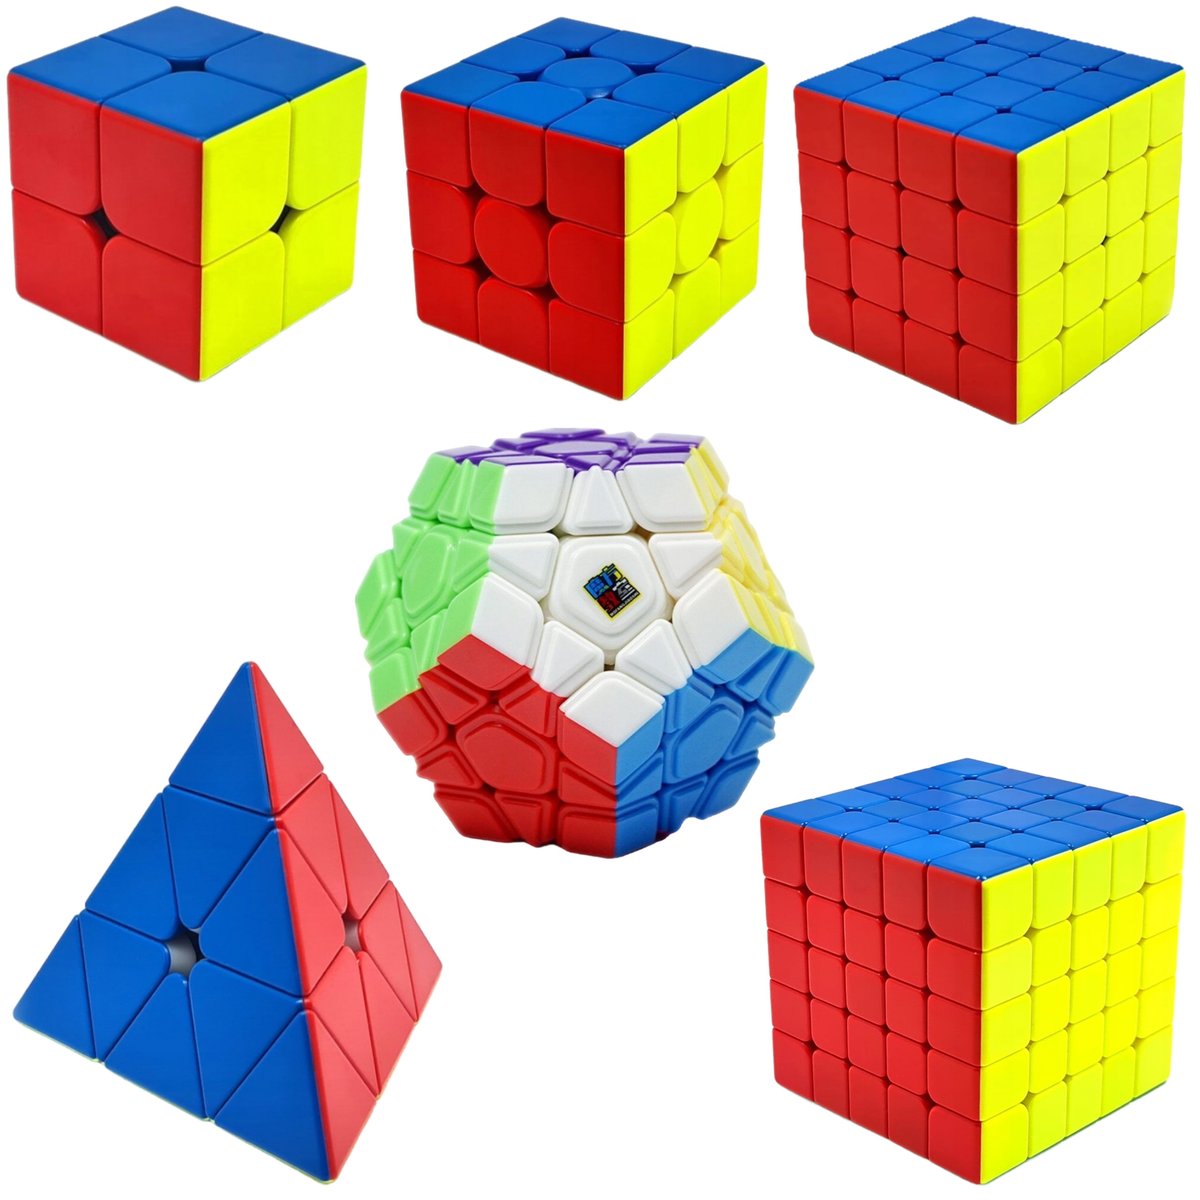 Zestaw Kostka Rubika 2x2 + 3x3 + 4x4 + 5x5 + Piramida + Megaminx MoYu